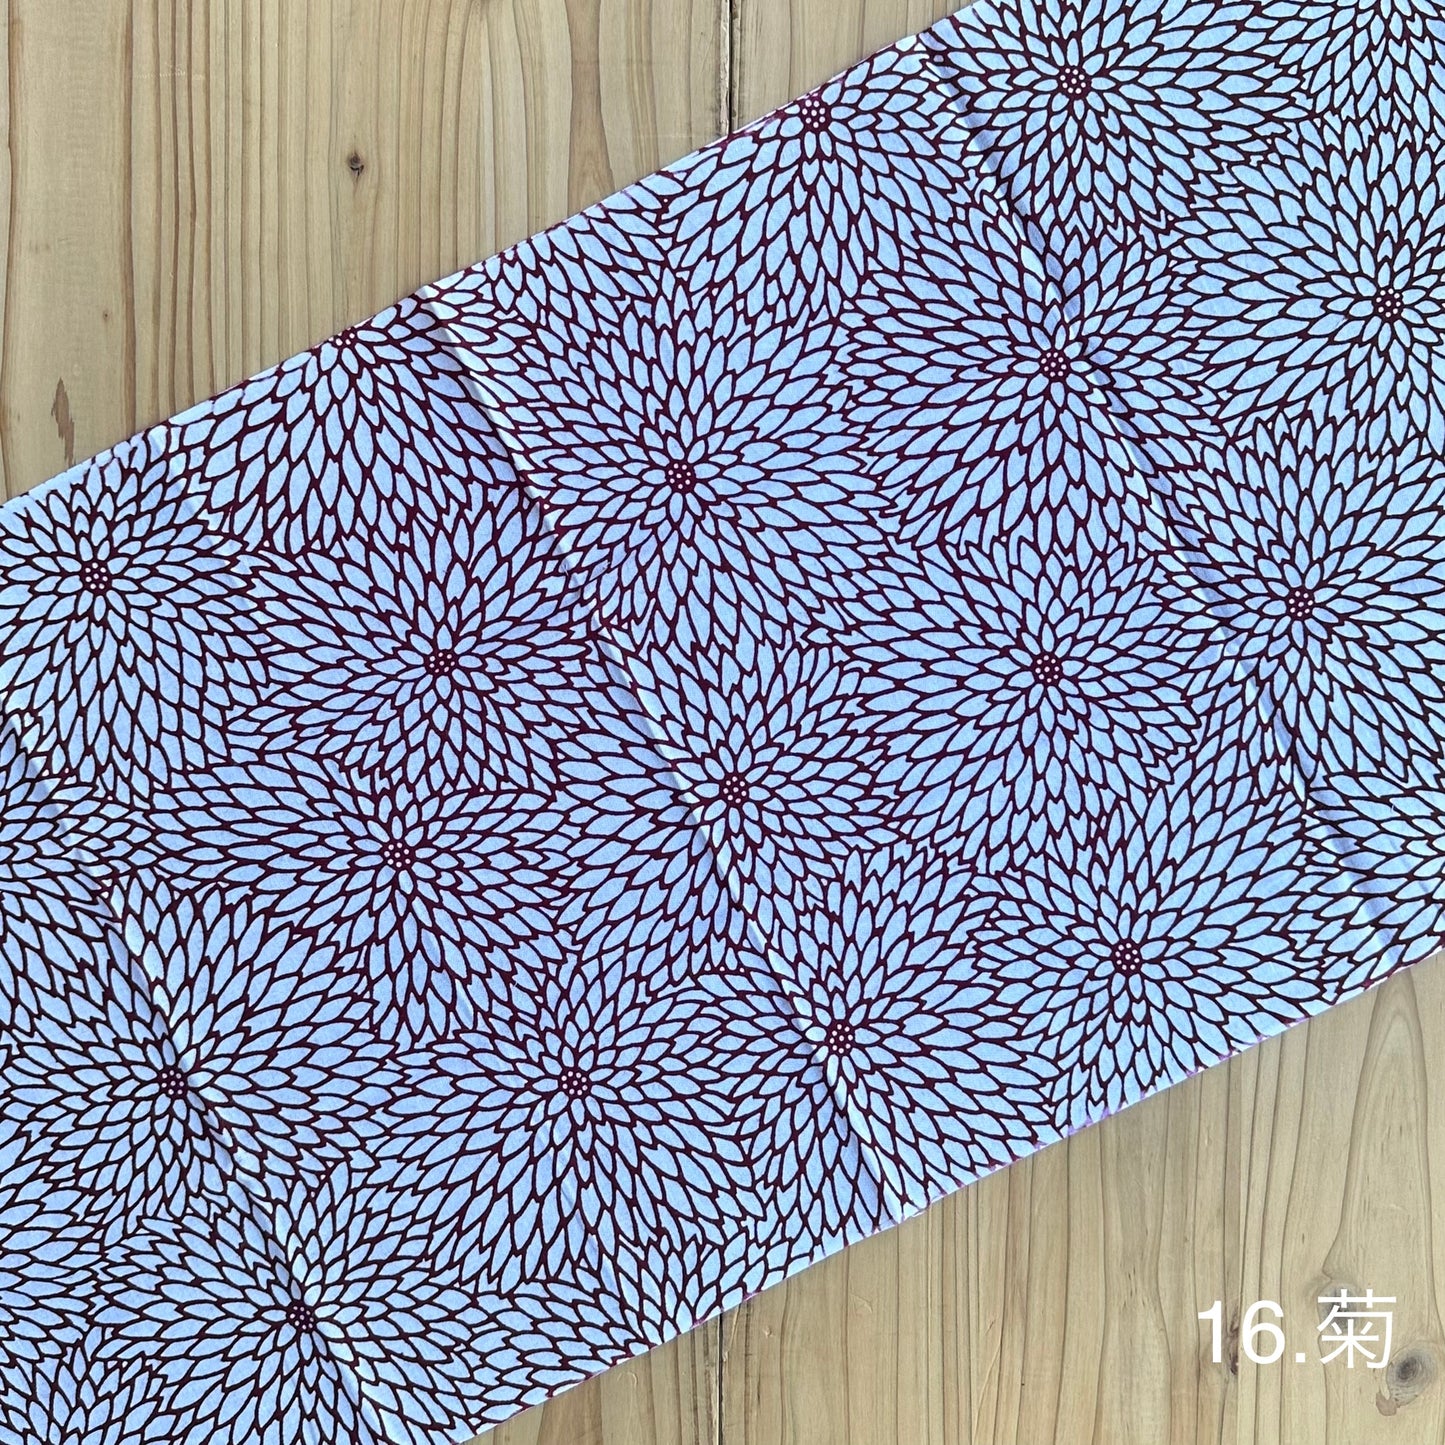 TENUGUI pattern